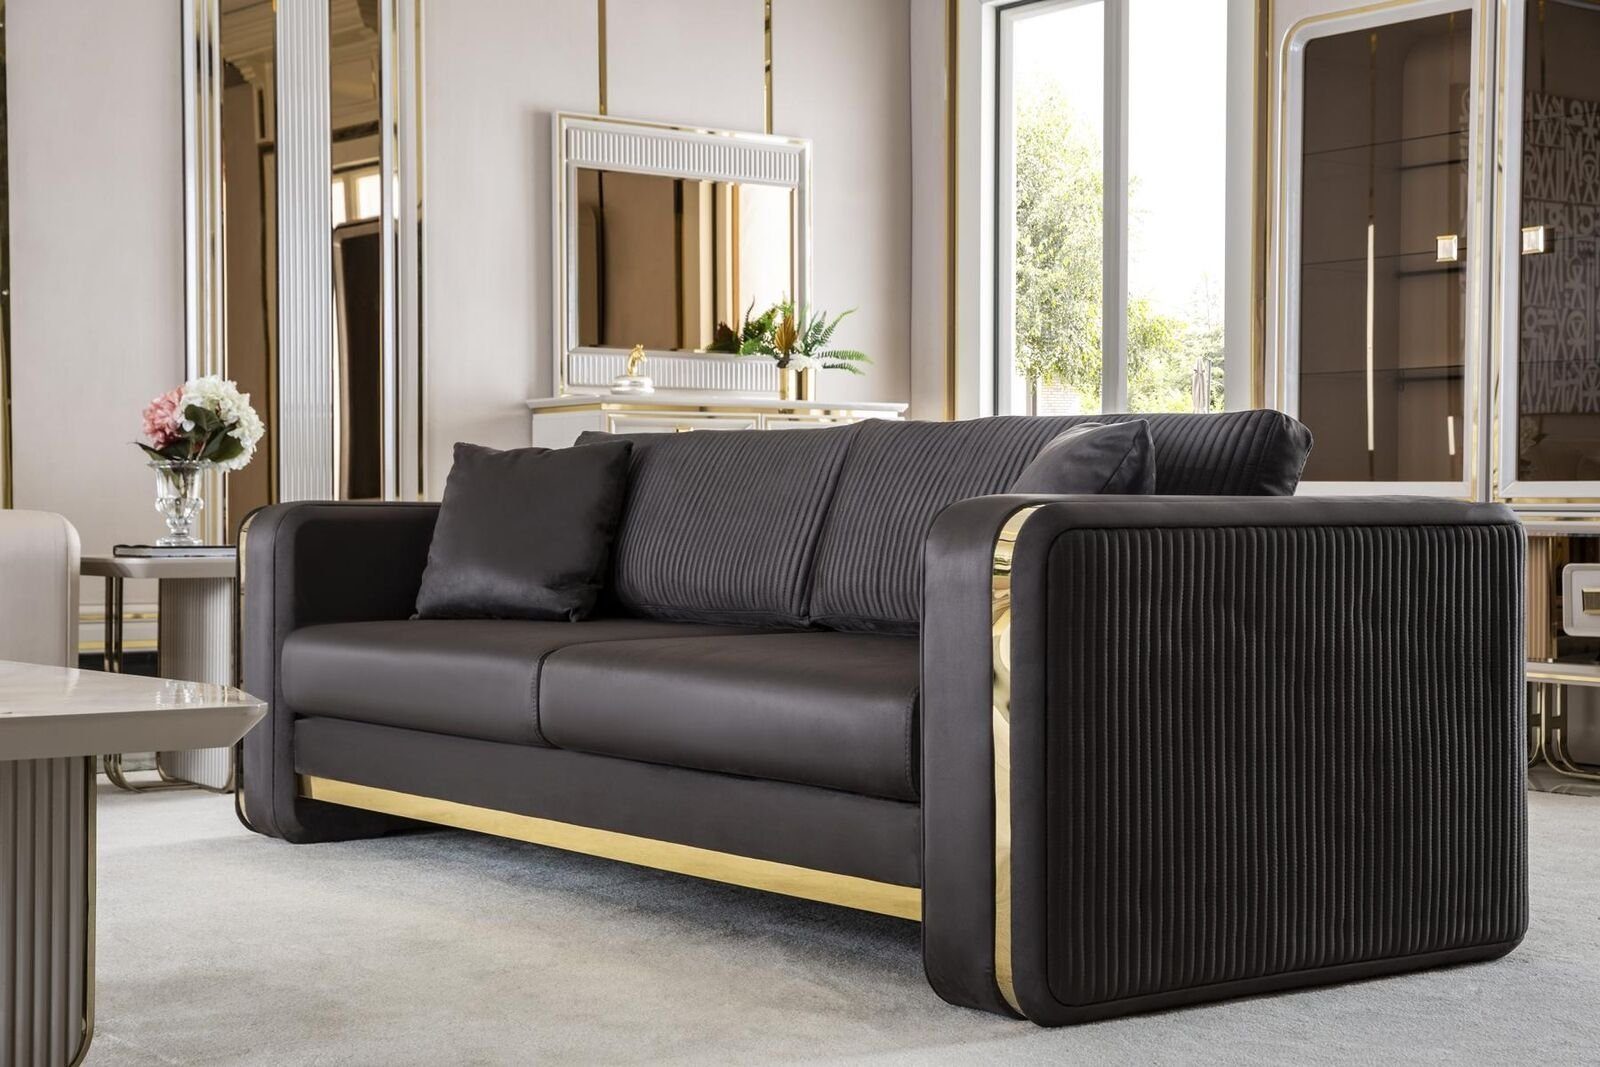 JVmoebel Sofa Couch Dreisitzer Sofa Möbel Luxus Sofas Couchen Metall Textil, Made in Europe